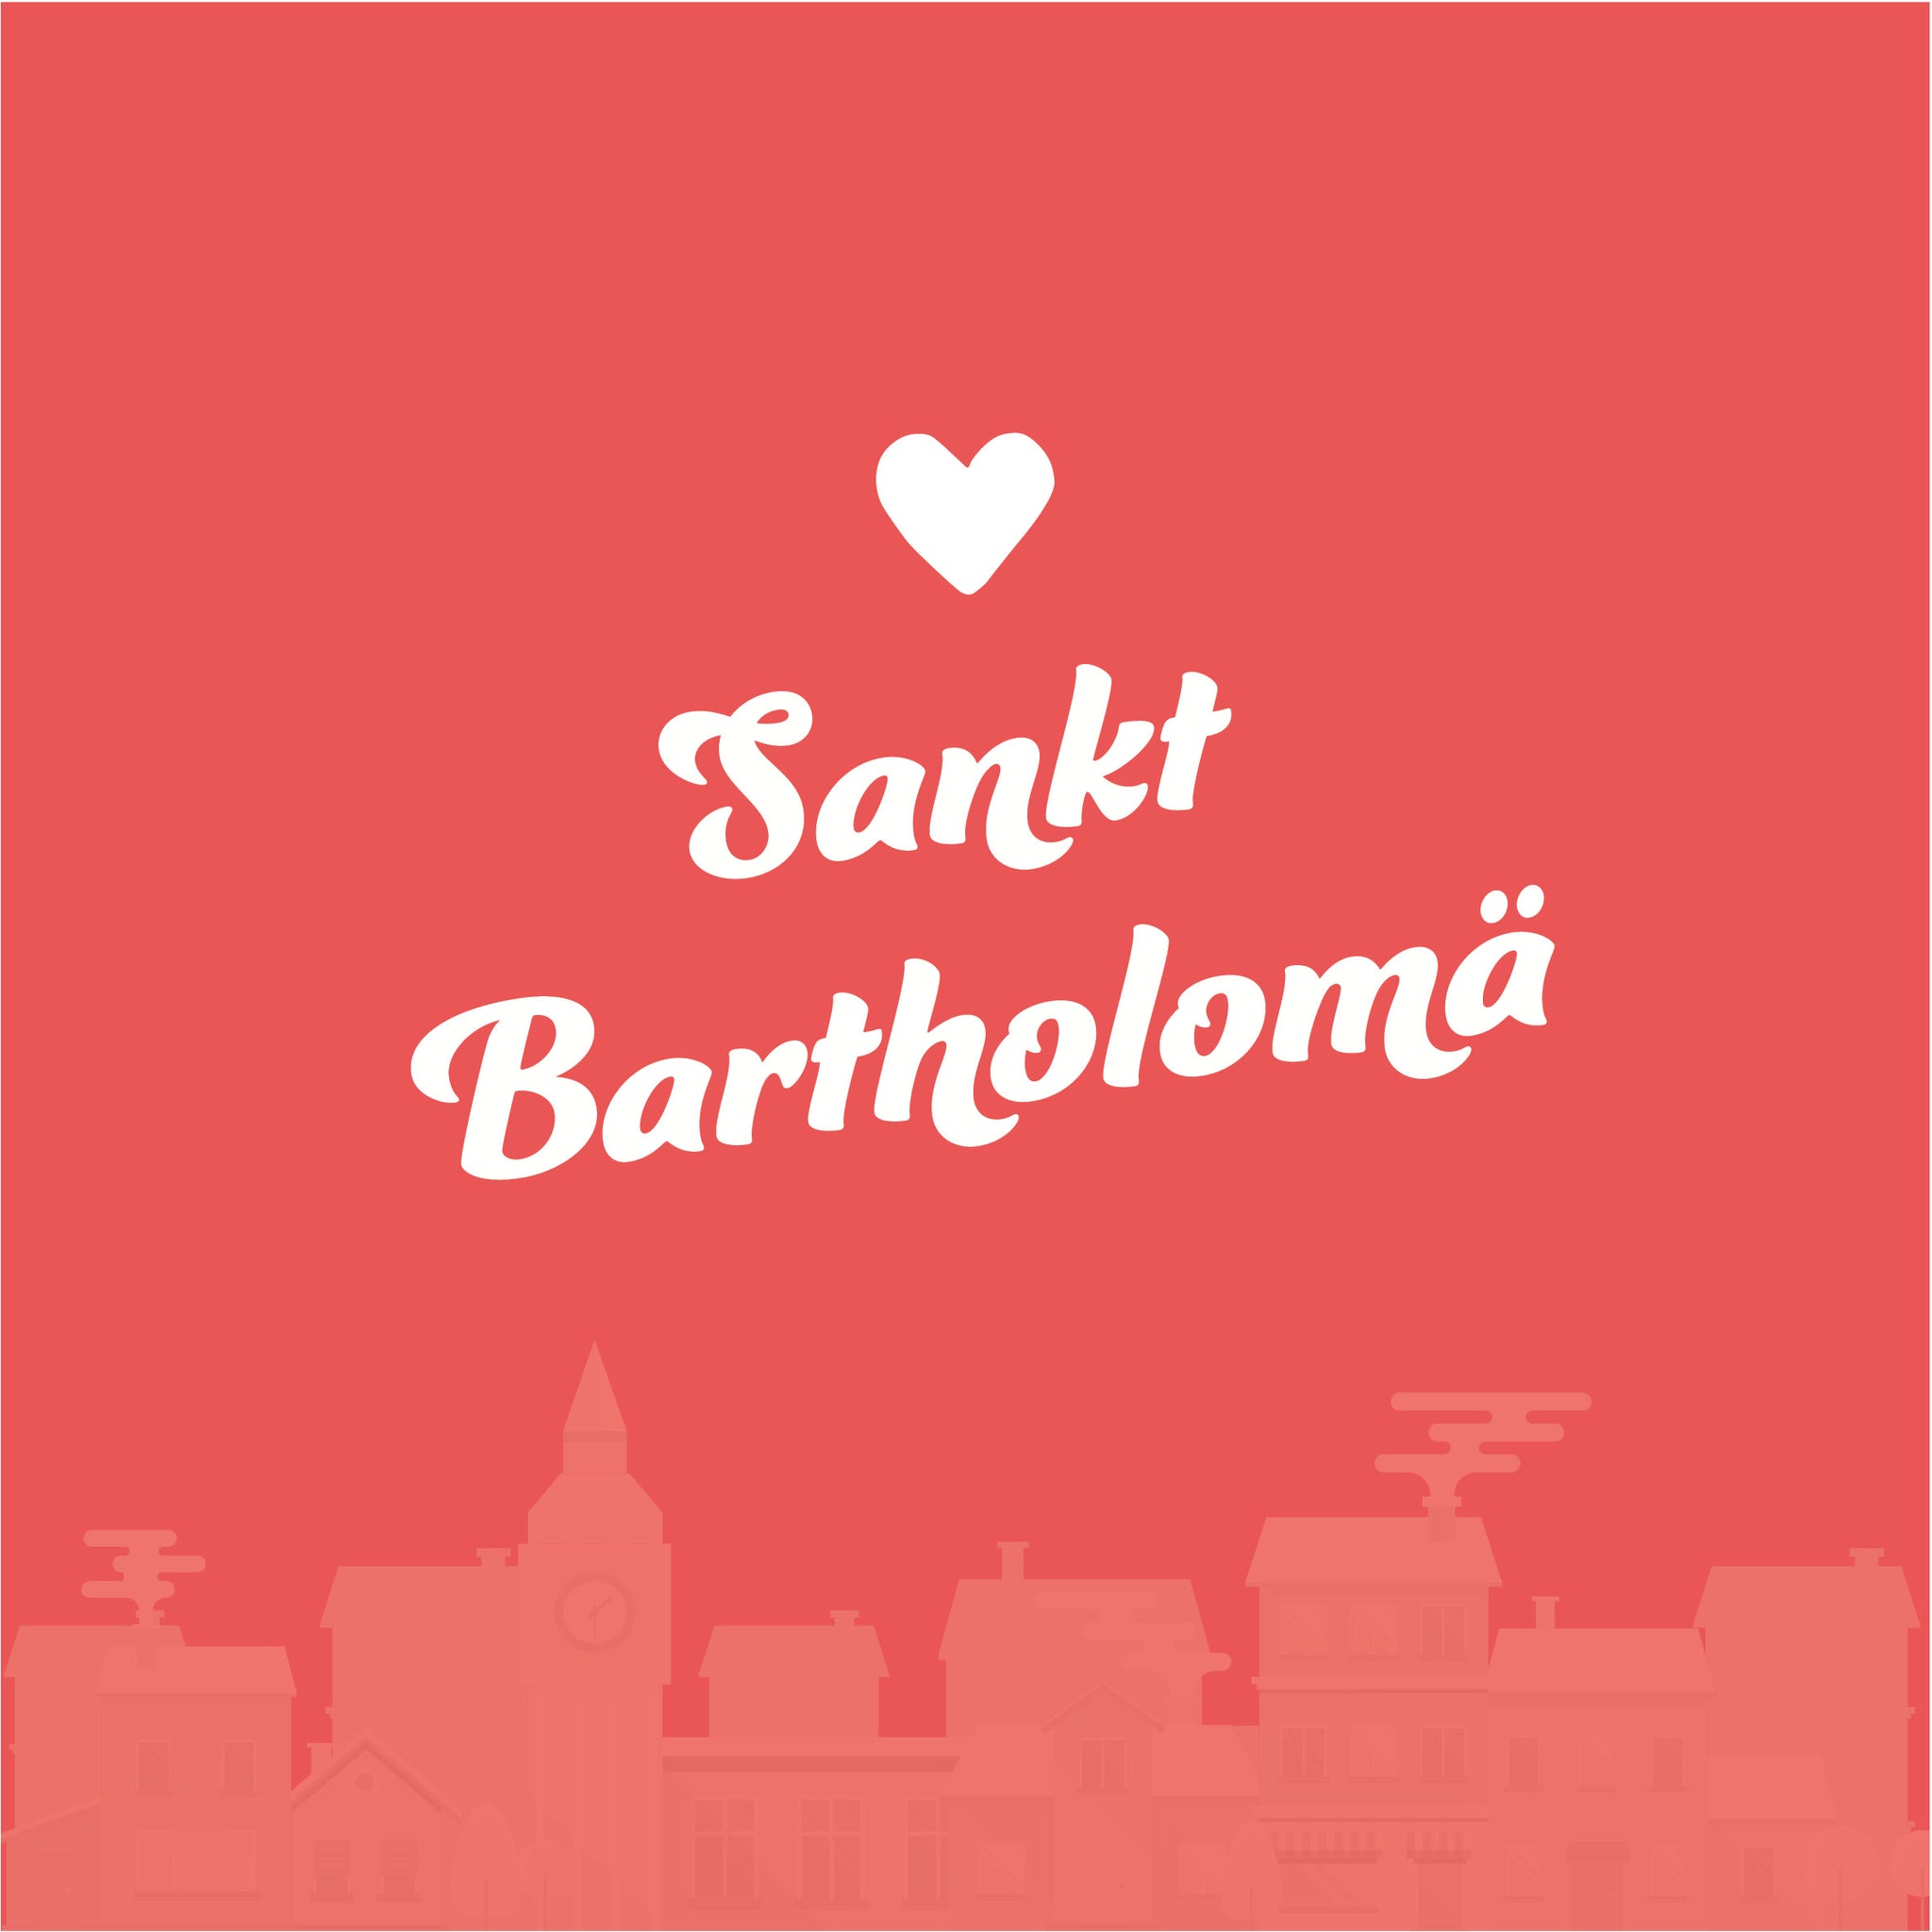 Sankt Bartholomä